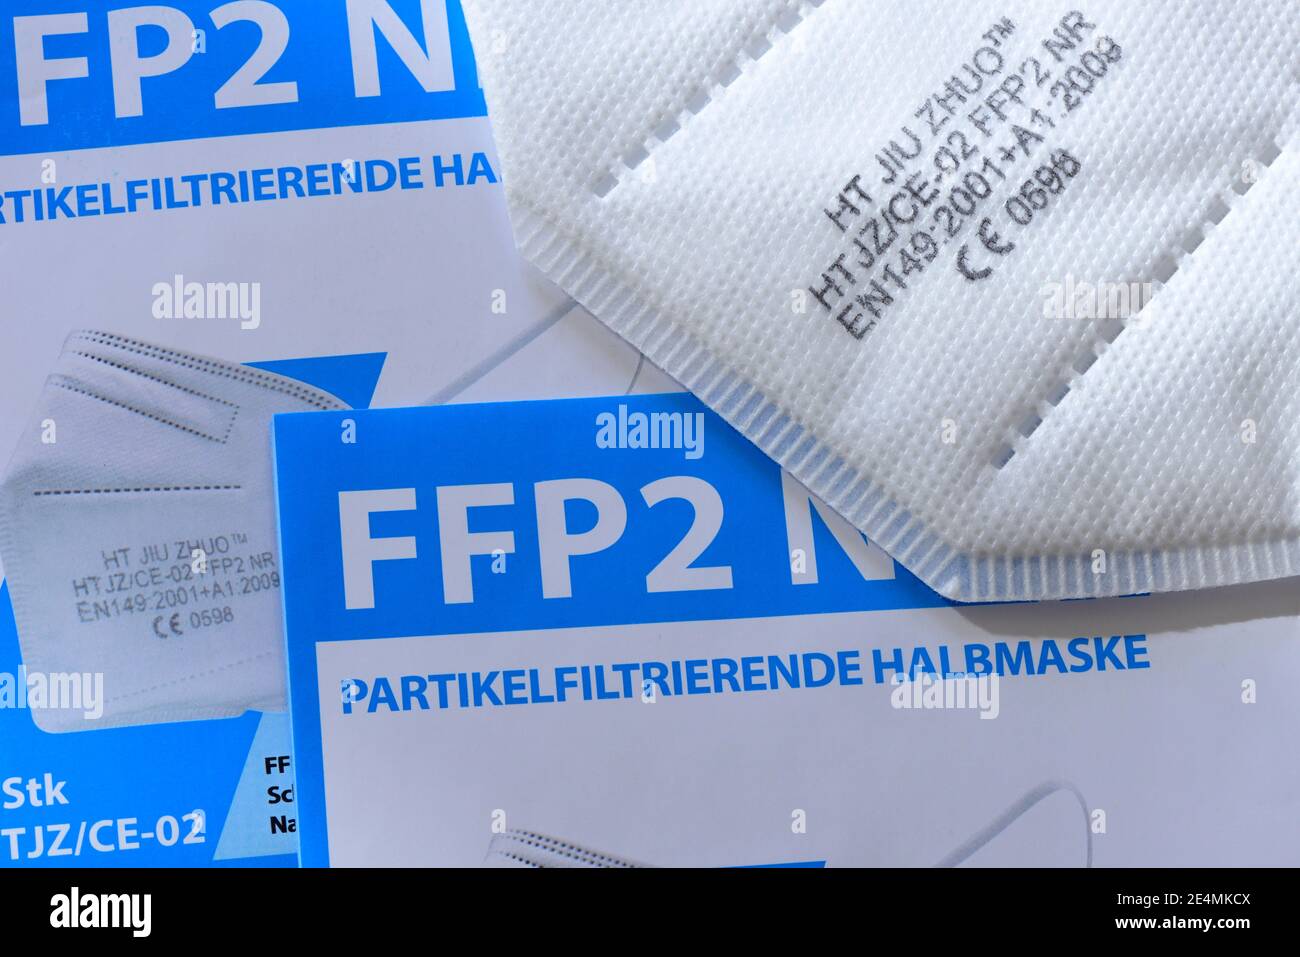 Semimaschera filtrante per particelle FFP2 Foto Stock